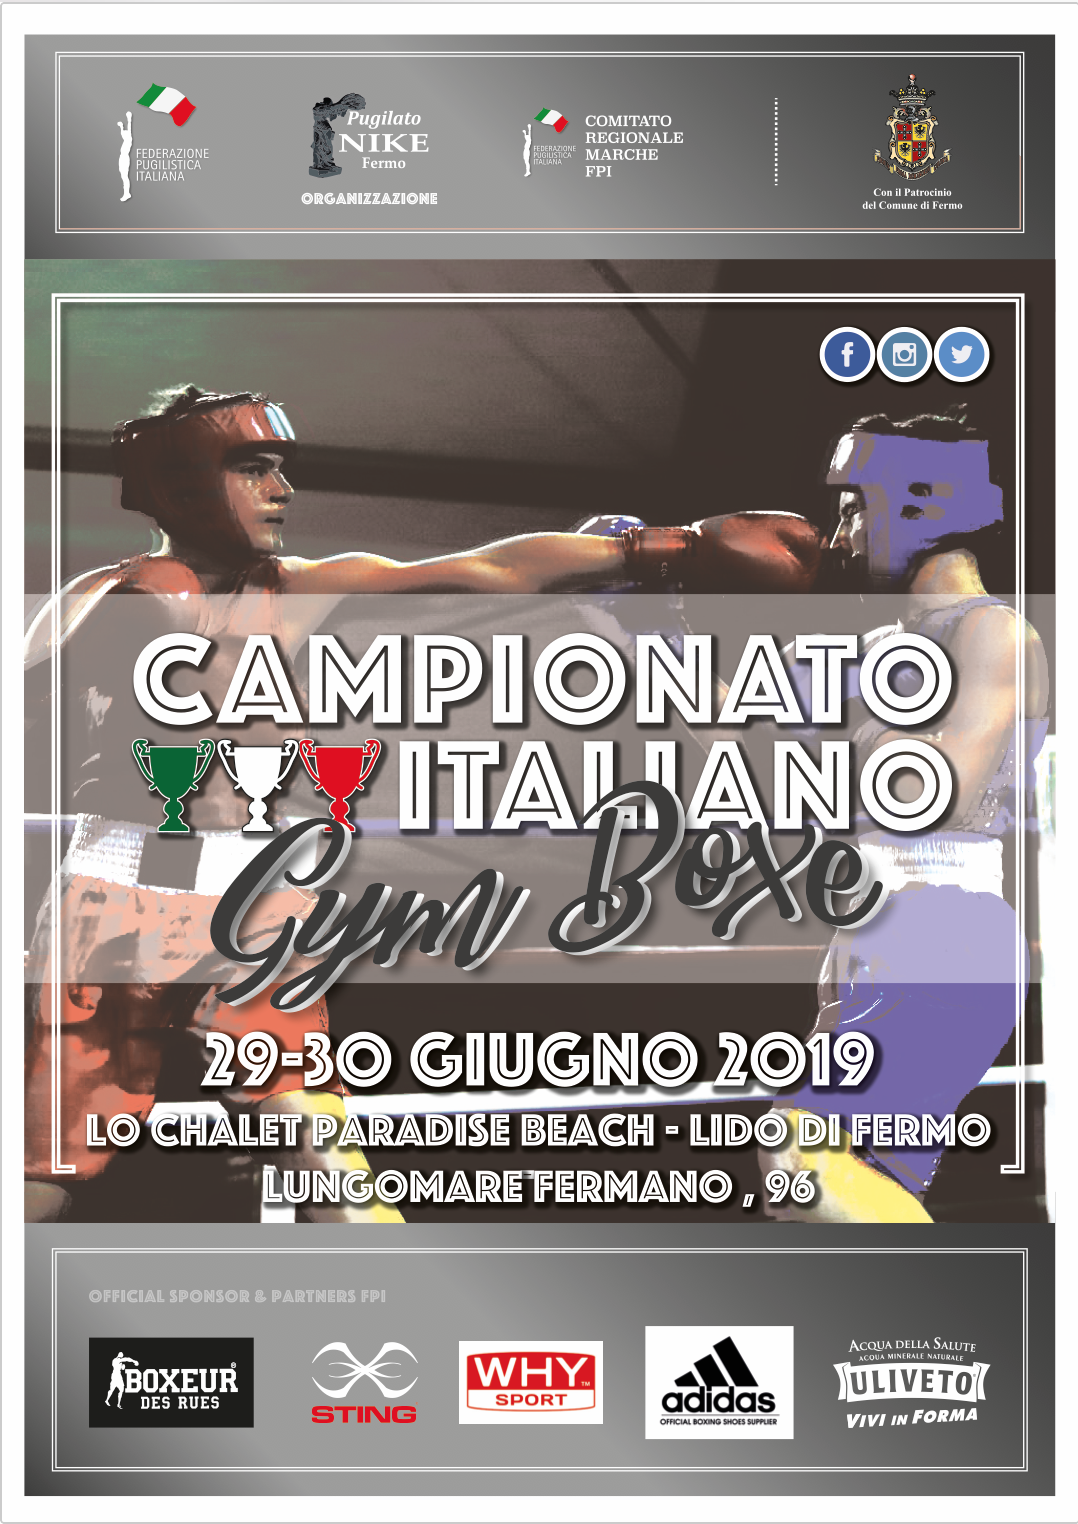 A Fermo dal 29 al 30 Giugno la Fase Nazionale del Campionato Gym Boxe 2019 - La Locandina Ufficiale #GymBoxe19